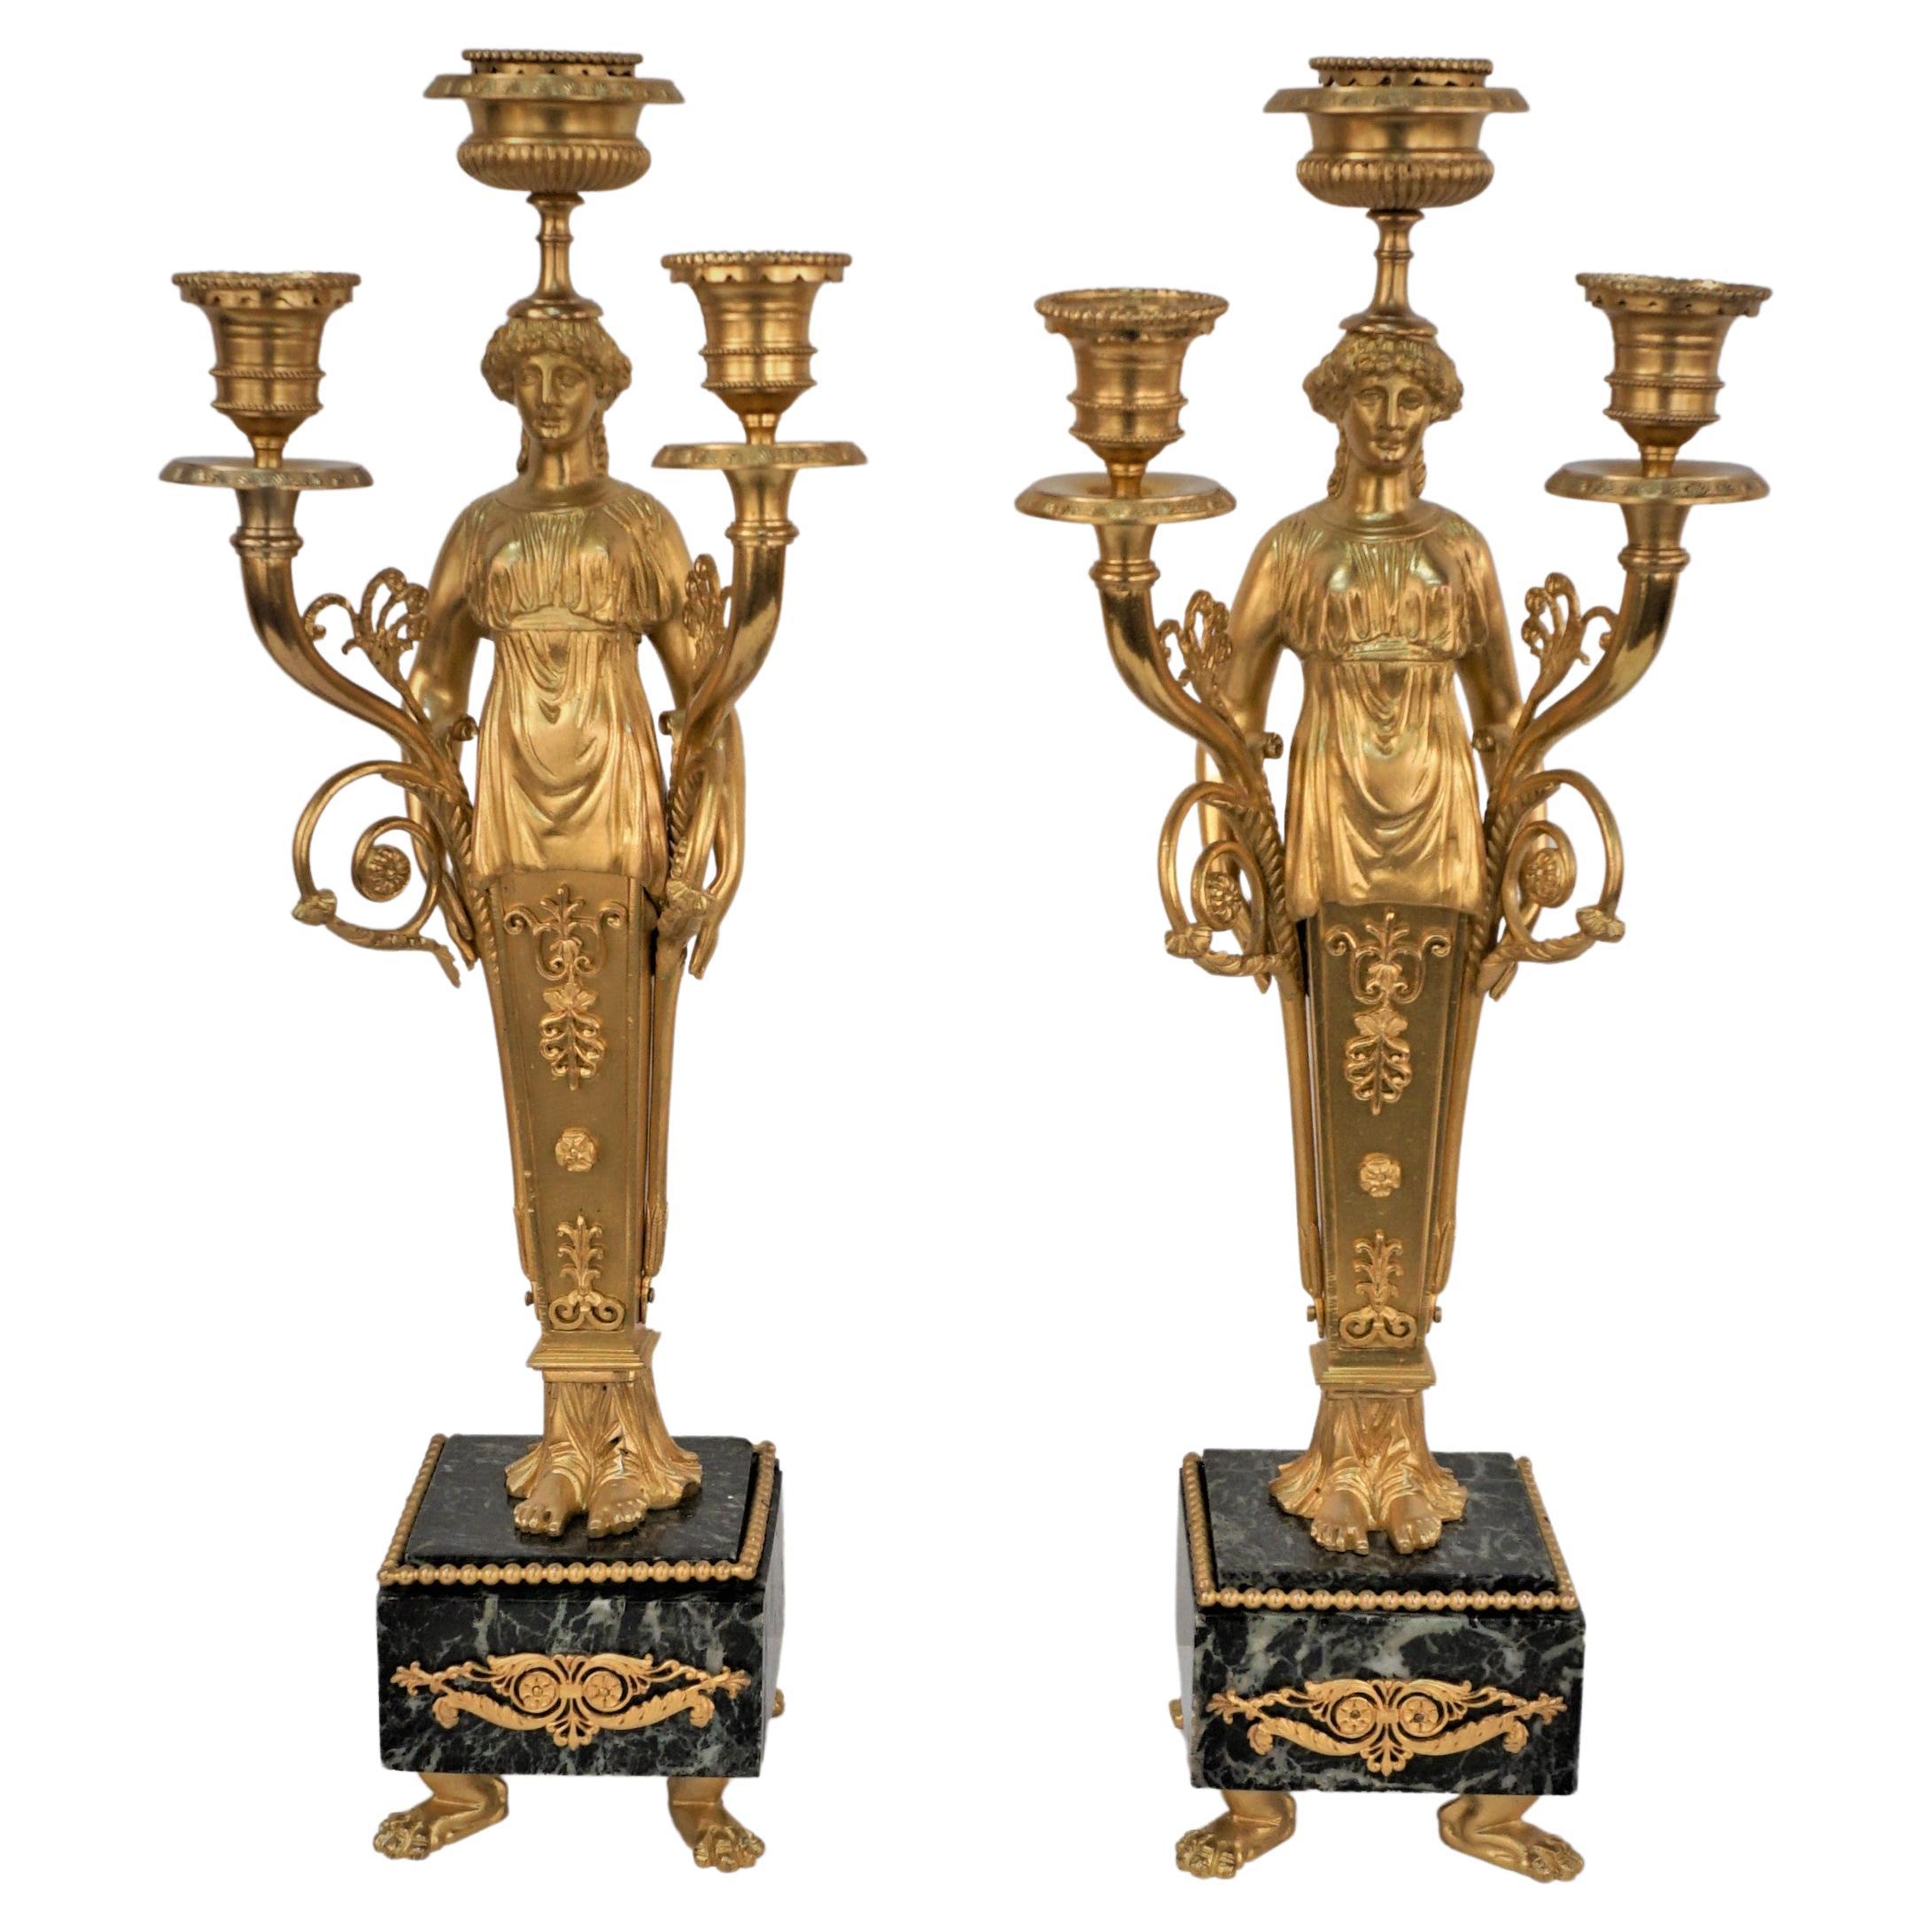 Candélabre en bronze doré de style Empire français de la fin du XIXe siècle